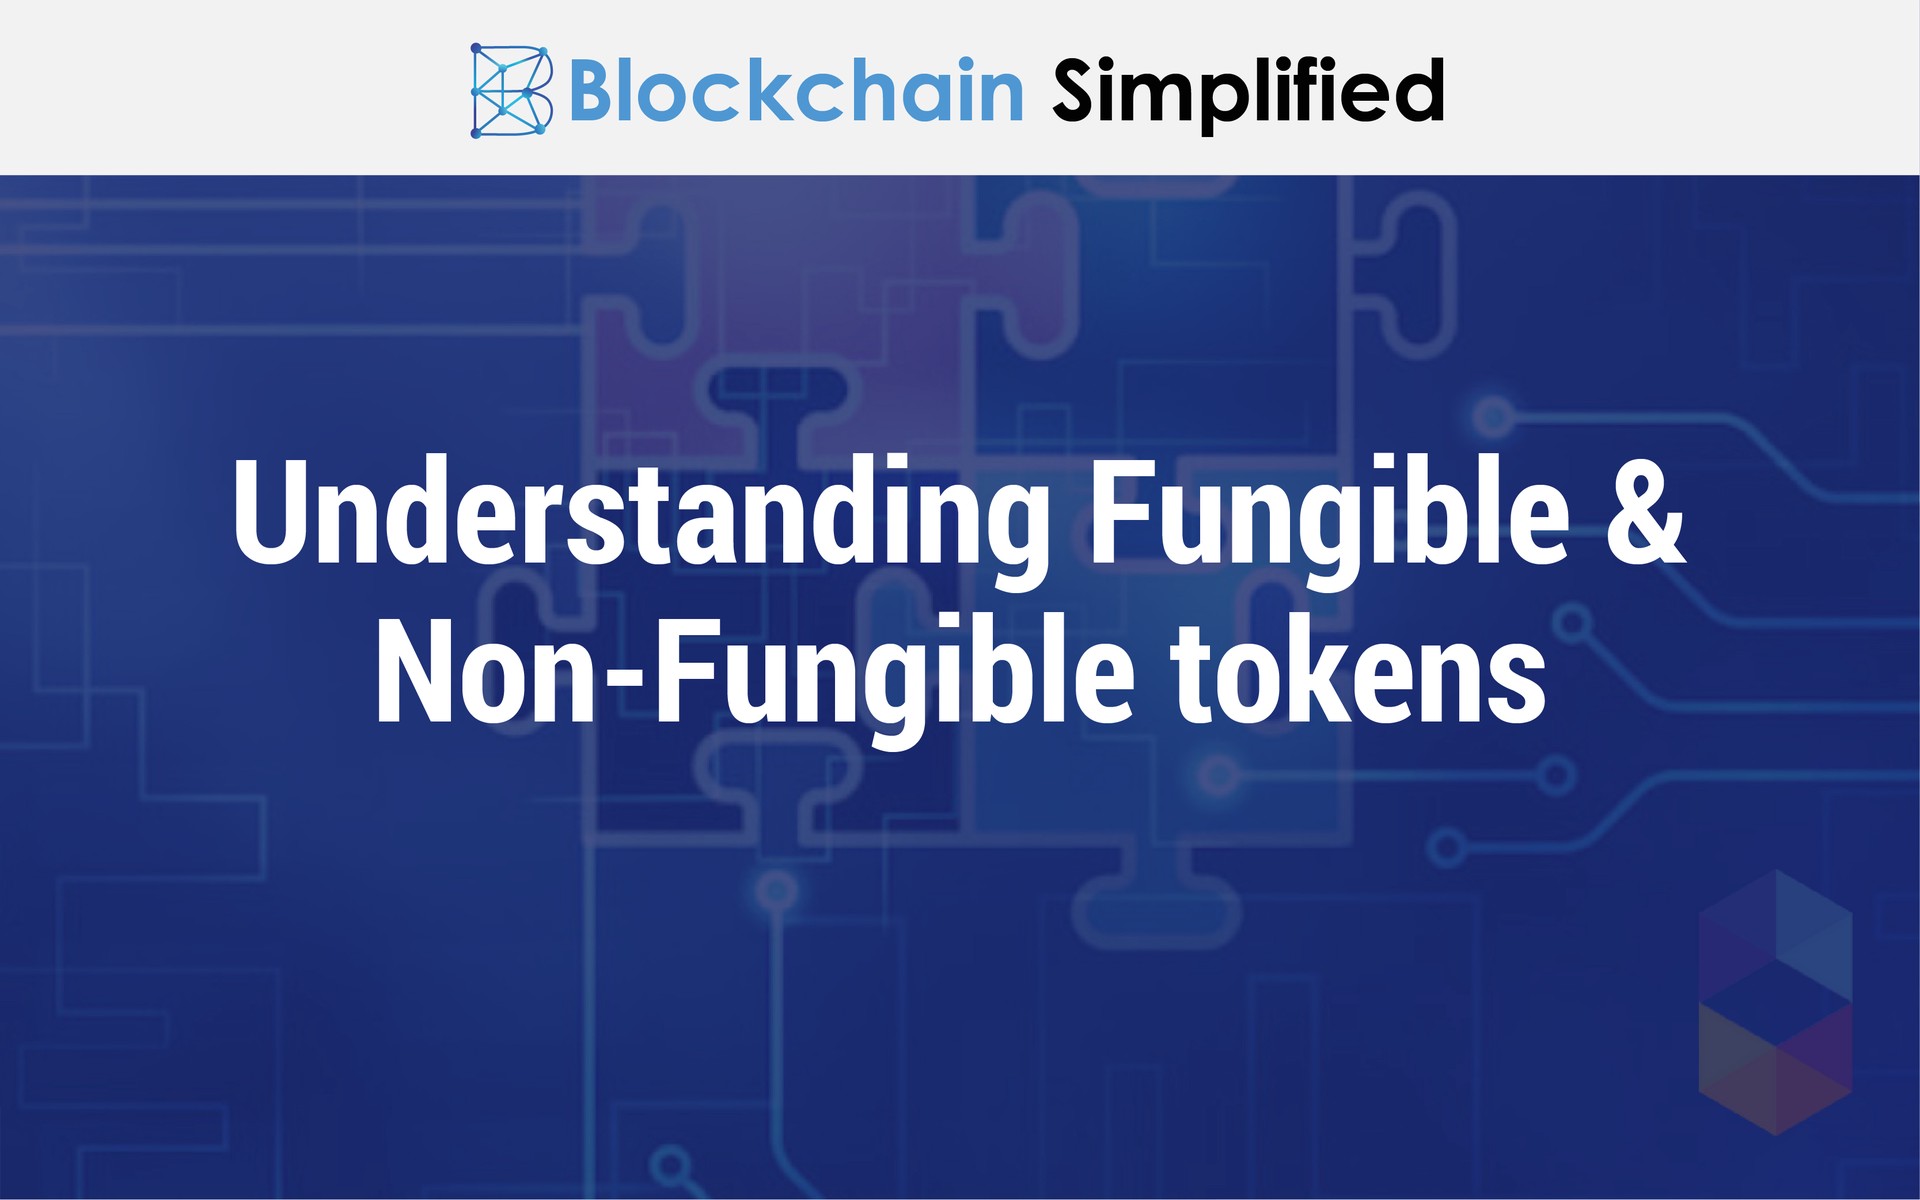 Fungible Non Fungible tokens main